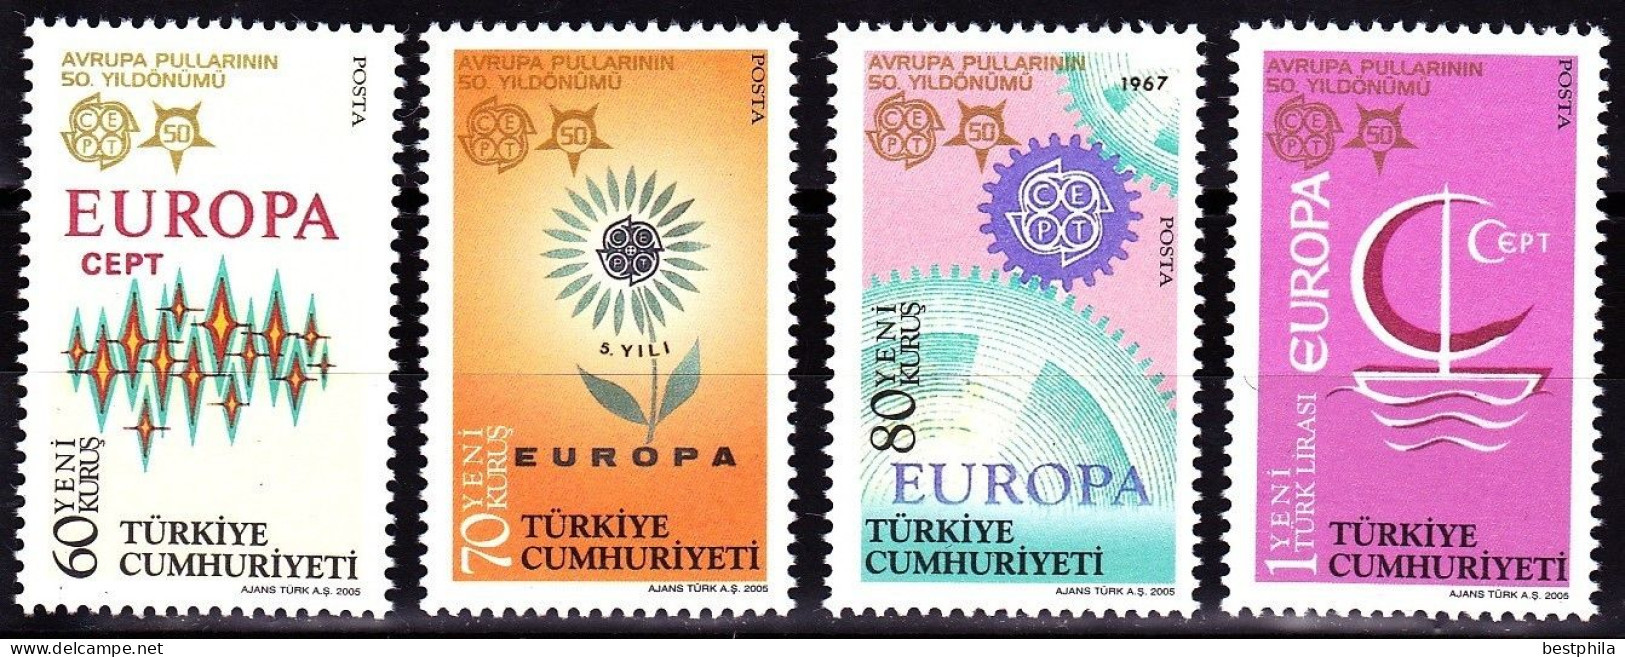 Europa Cept - 2005 - Turkey, Türkei - Anniversary Of 50th Years Euroapa Cept ** MNH - 2005